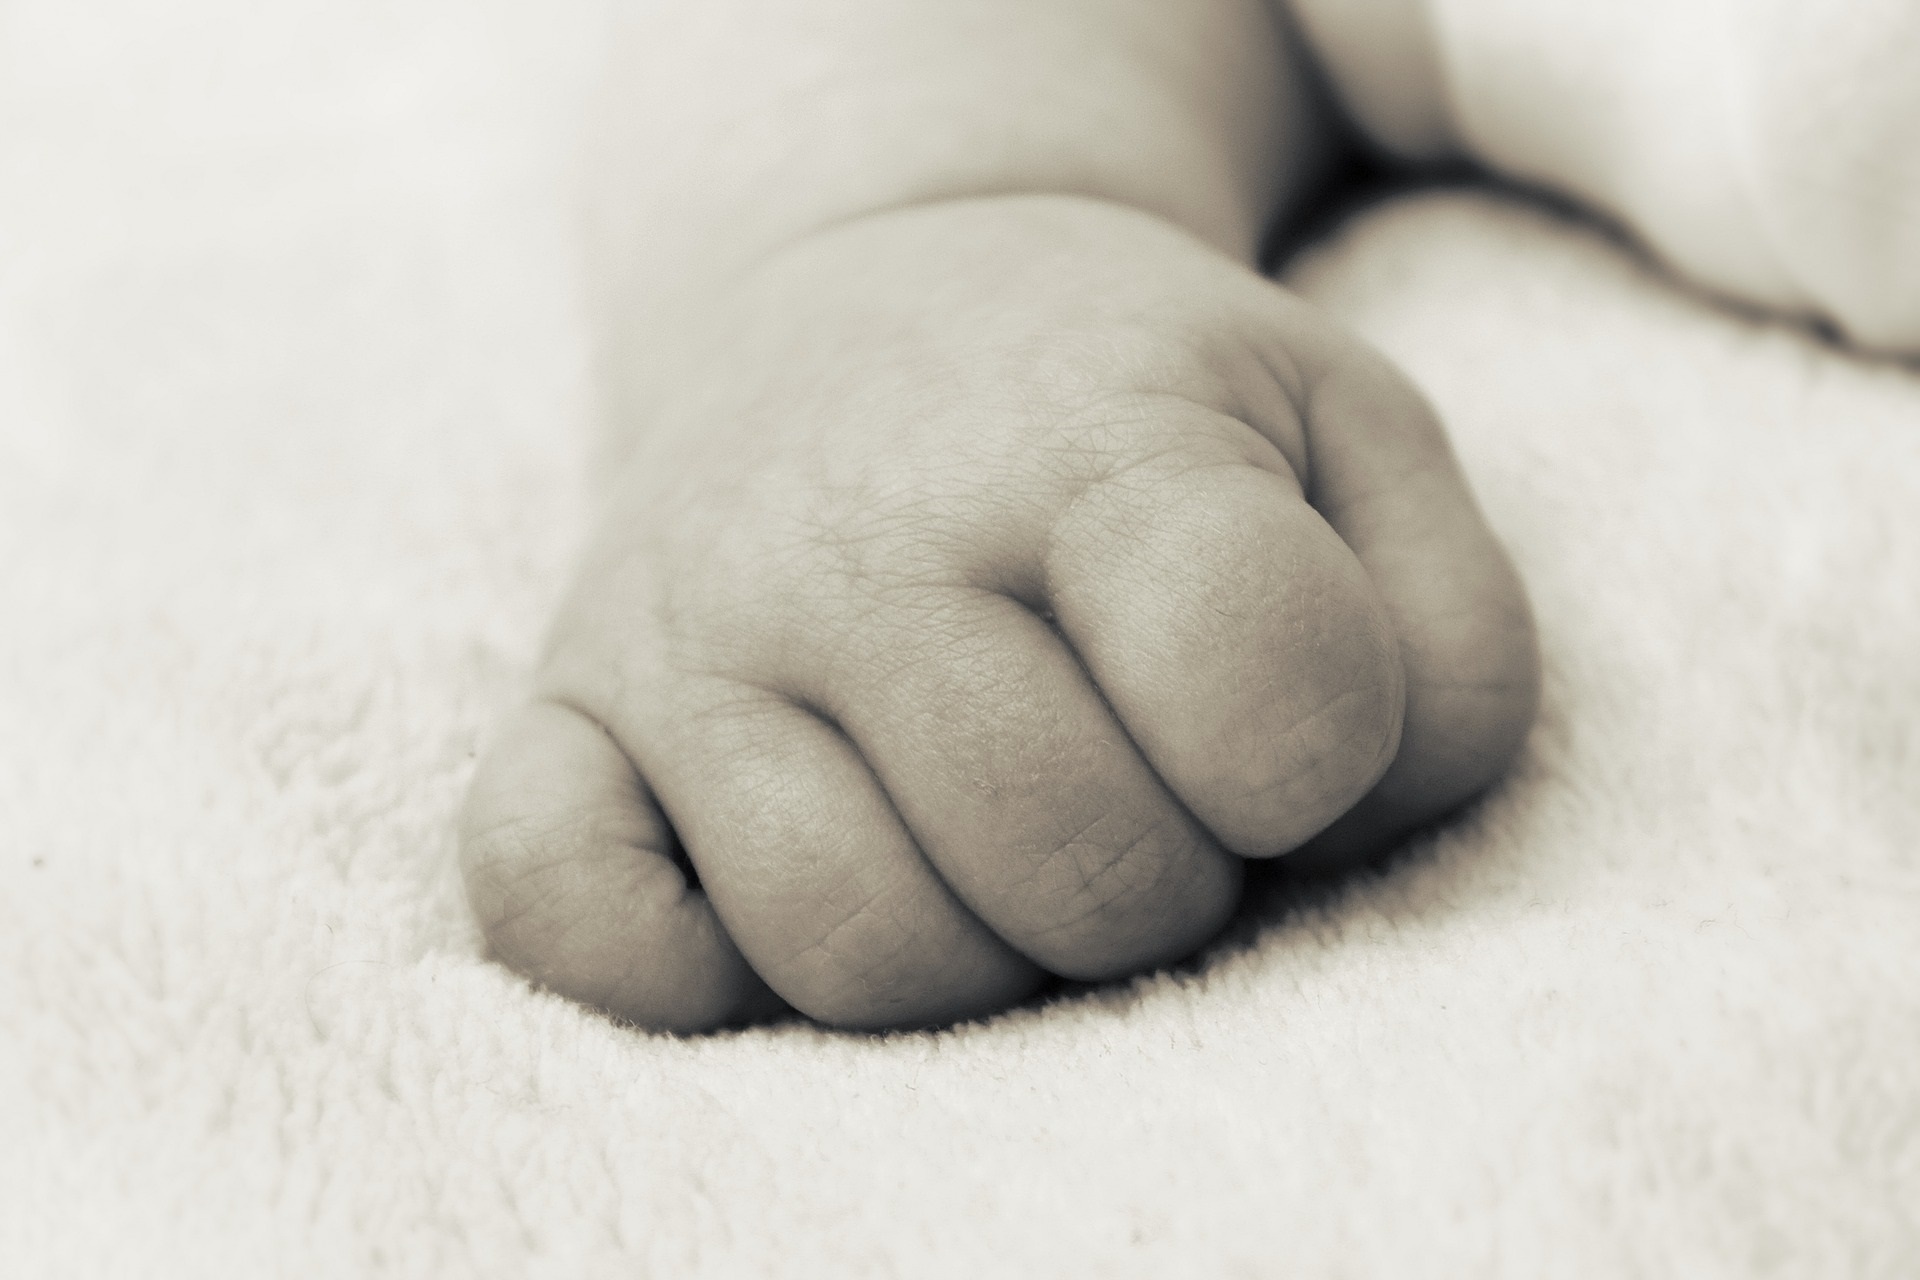 Según los especialistas, los bebés deben dormir en la misma habitación con sus padres durante al menos seis meses, pero en una superficie separada, firme y plana

VERITAS INTERCONTINENTAL
